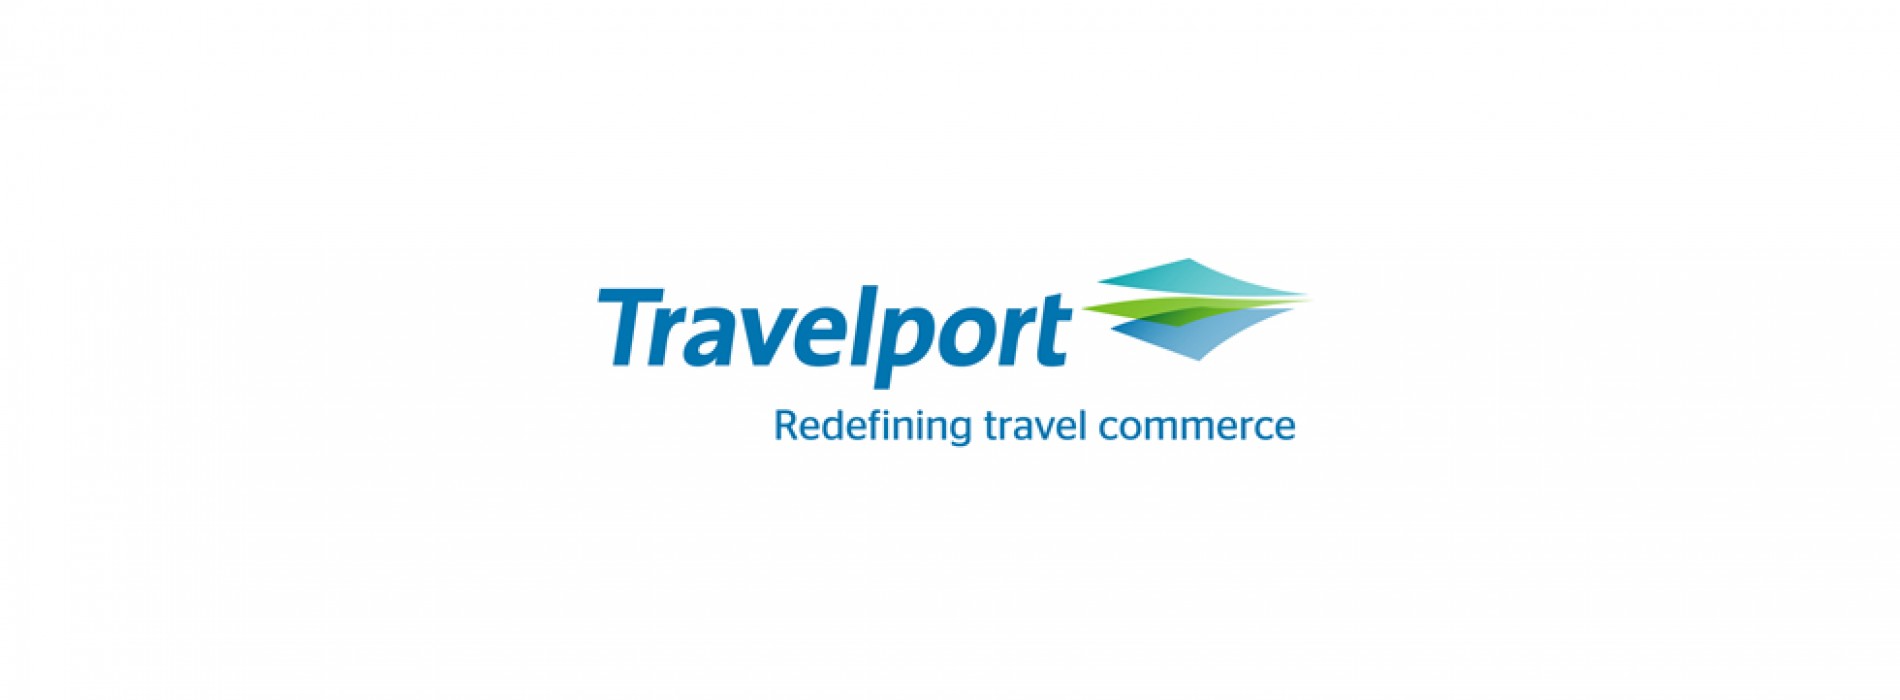 Travelport global survey puts India top of digital traveler rankings